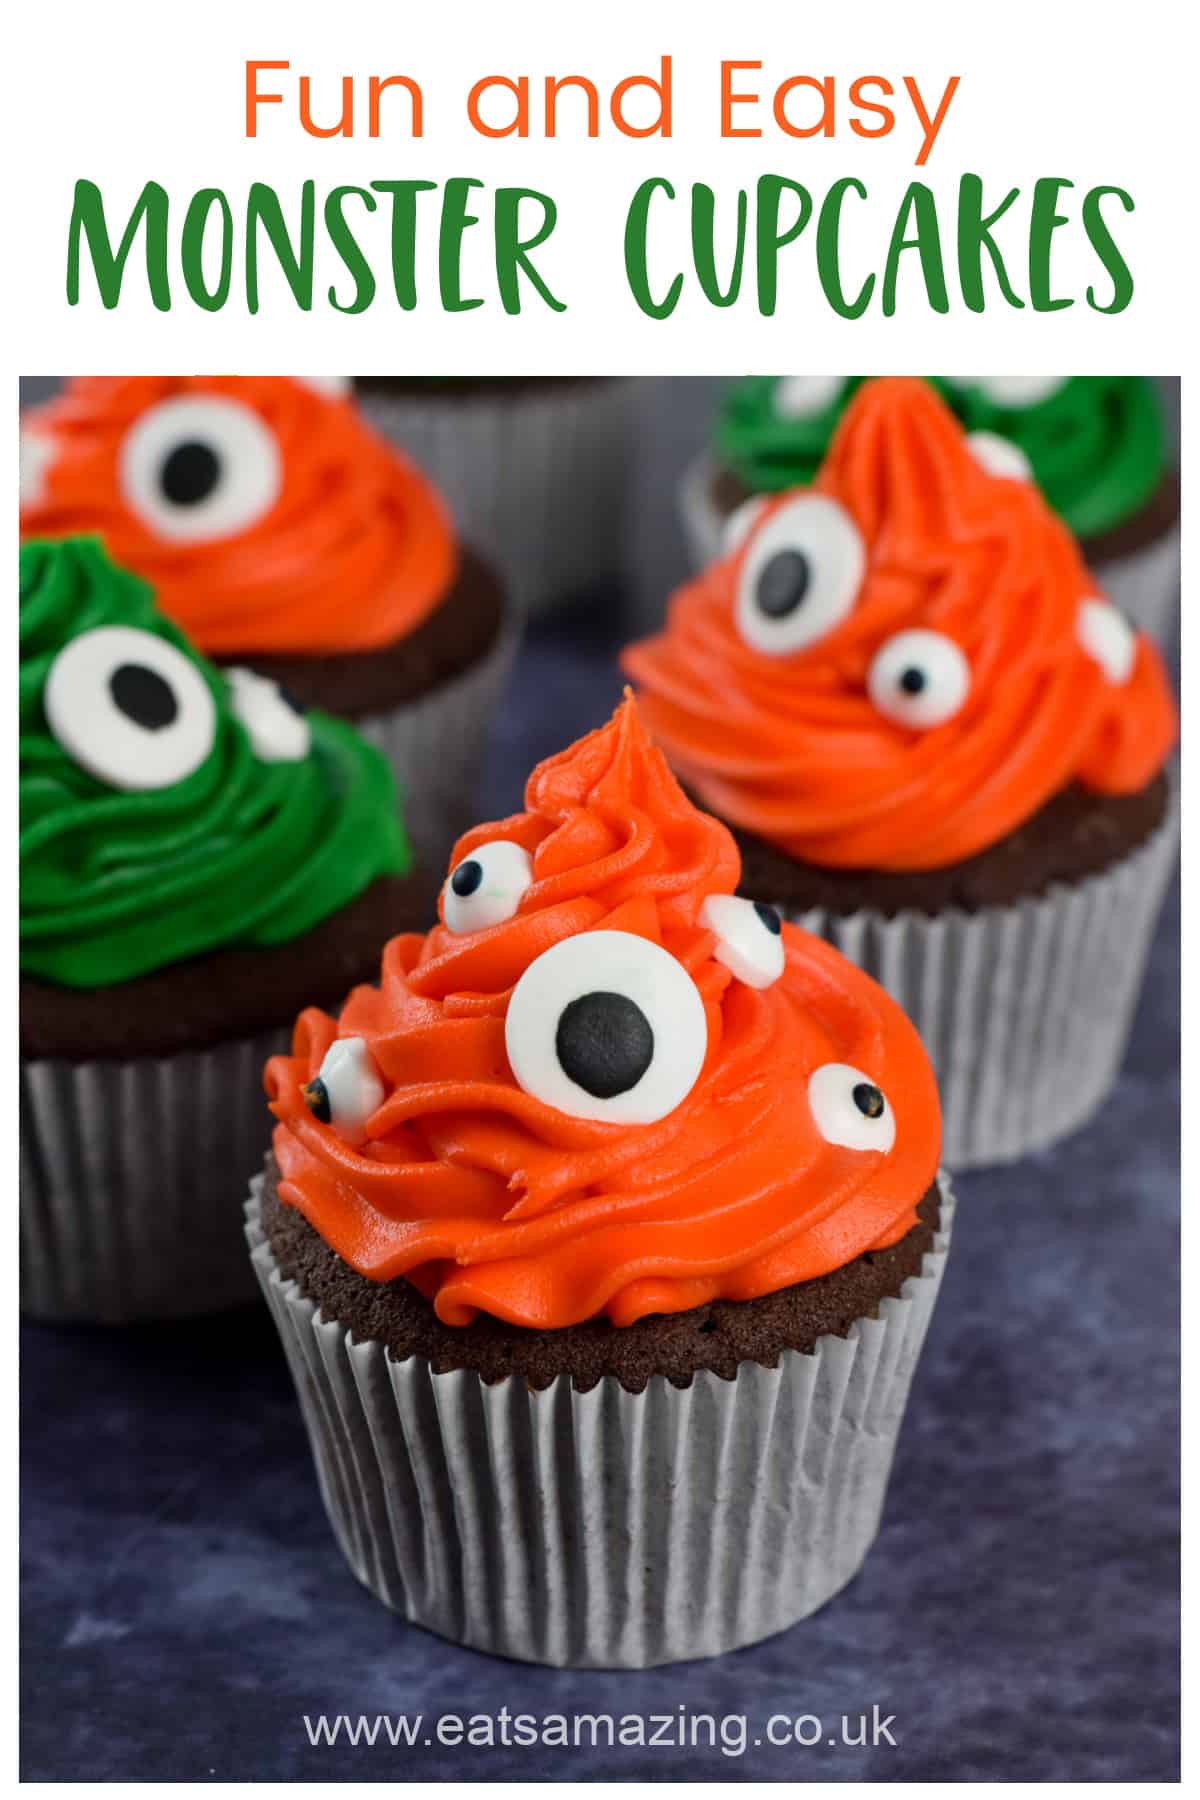 Wie man lustige und einfache Monster-Cupcakes macht – Halloween-Backrezept für Kinder